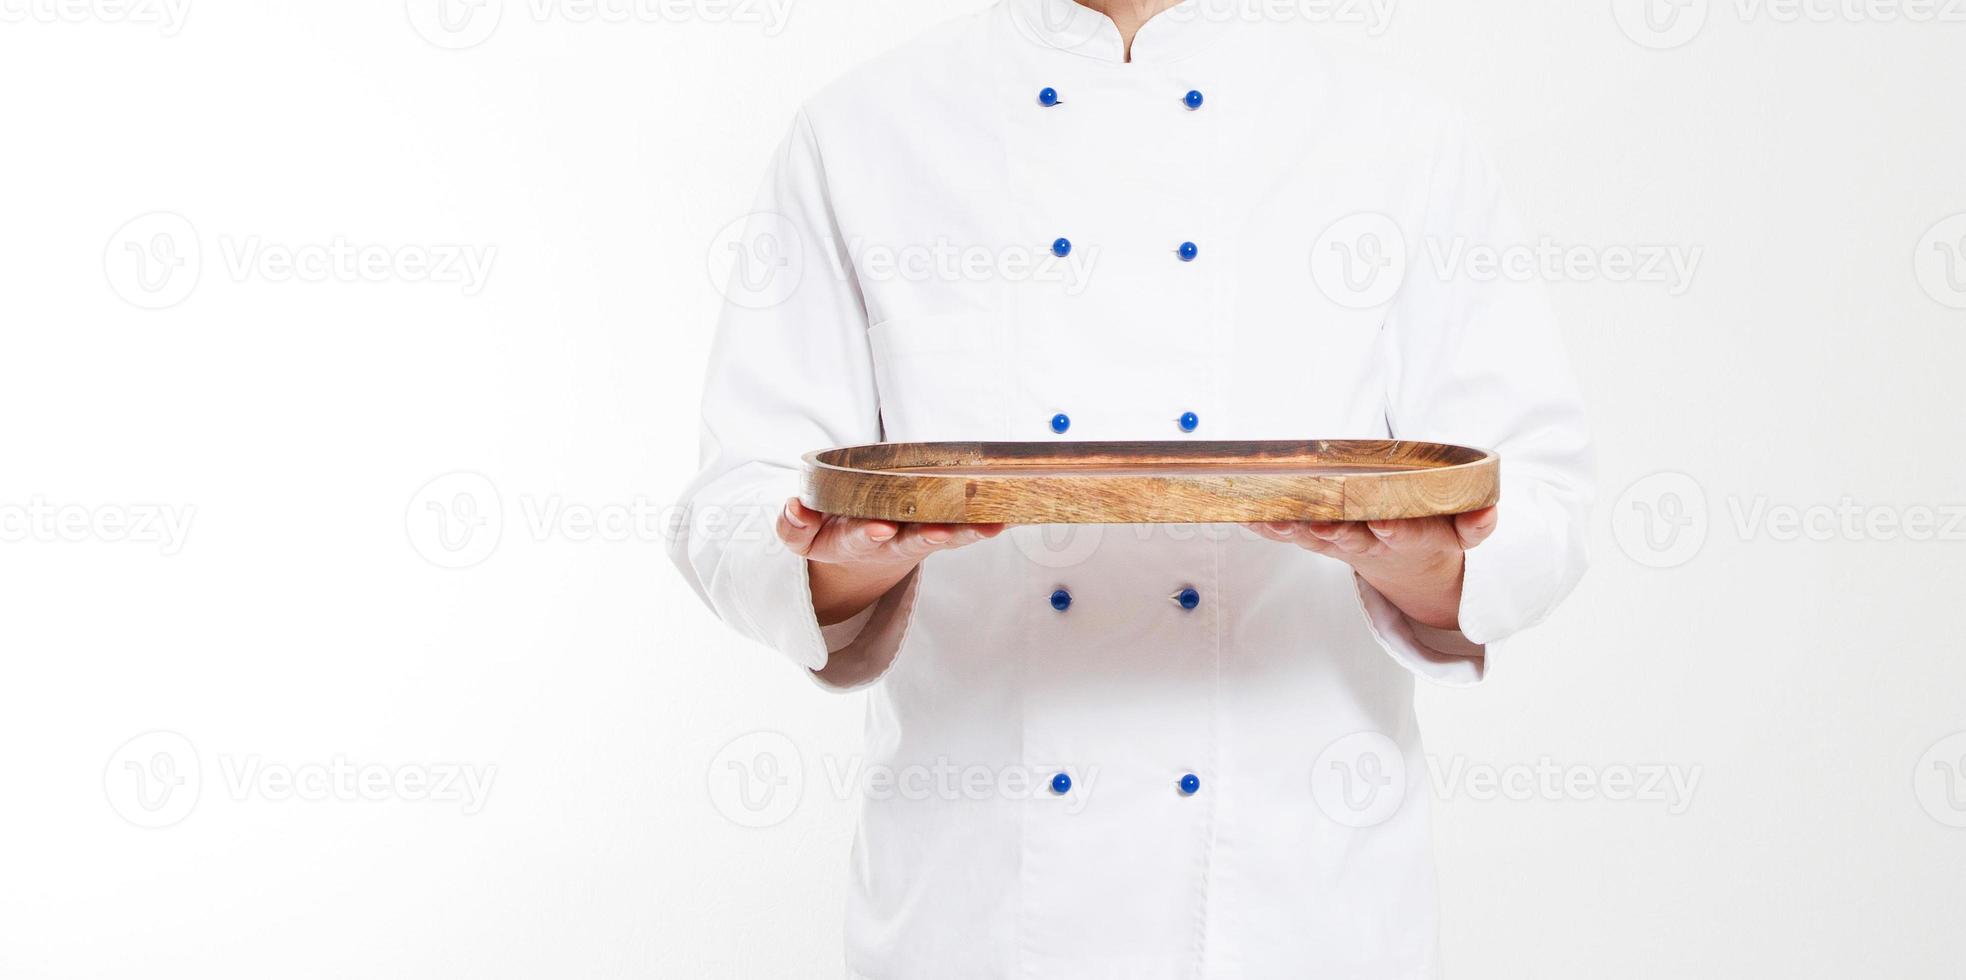 tom tavla för mat i händerna på kocken isolerad på vit bakgrund foto